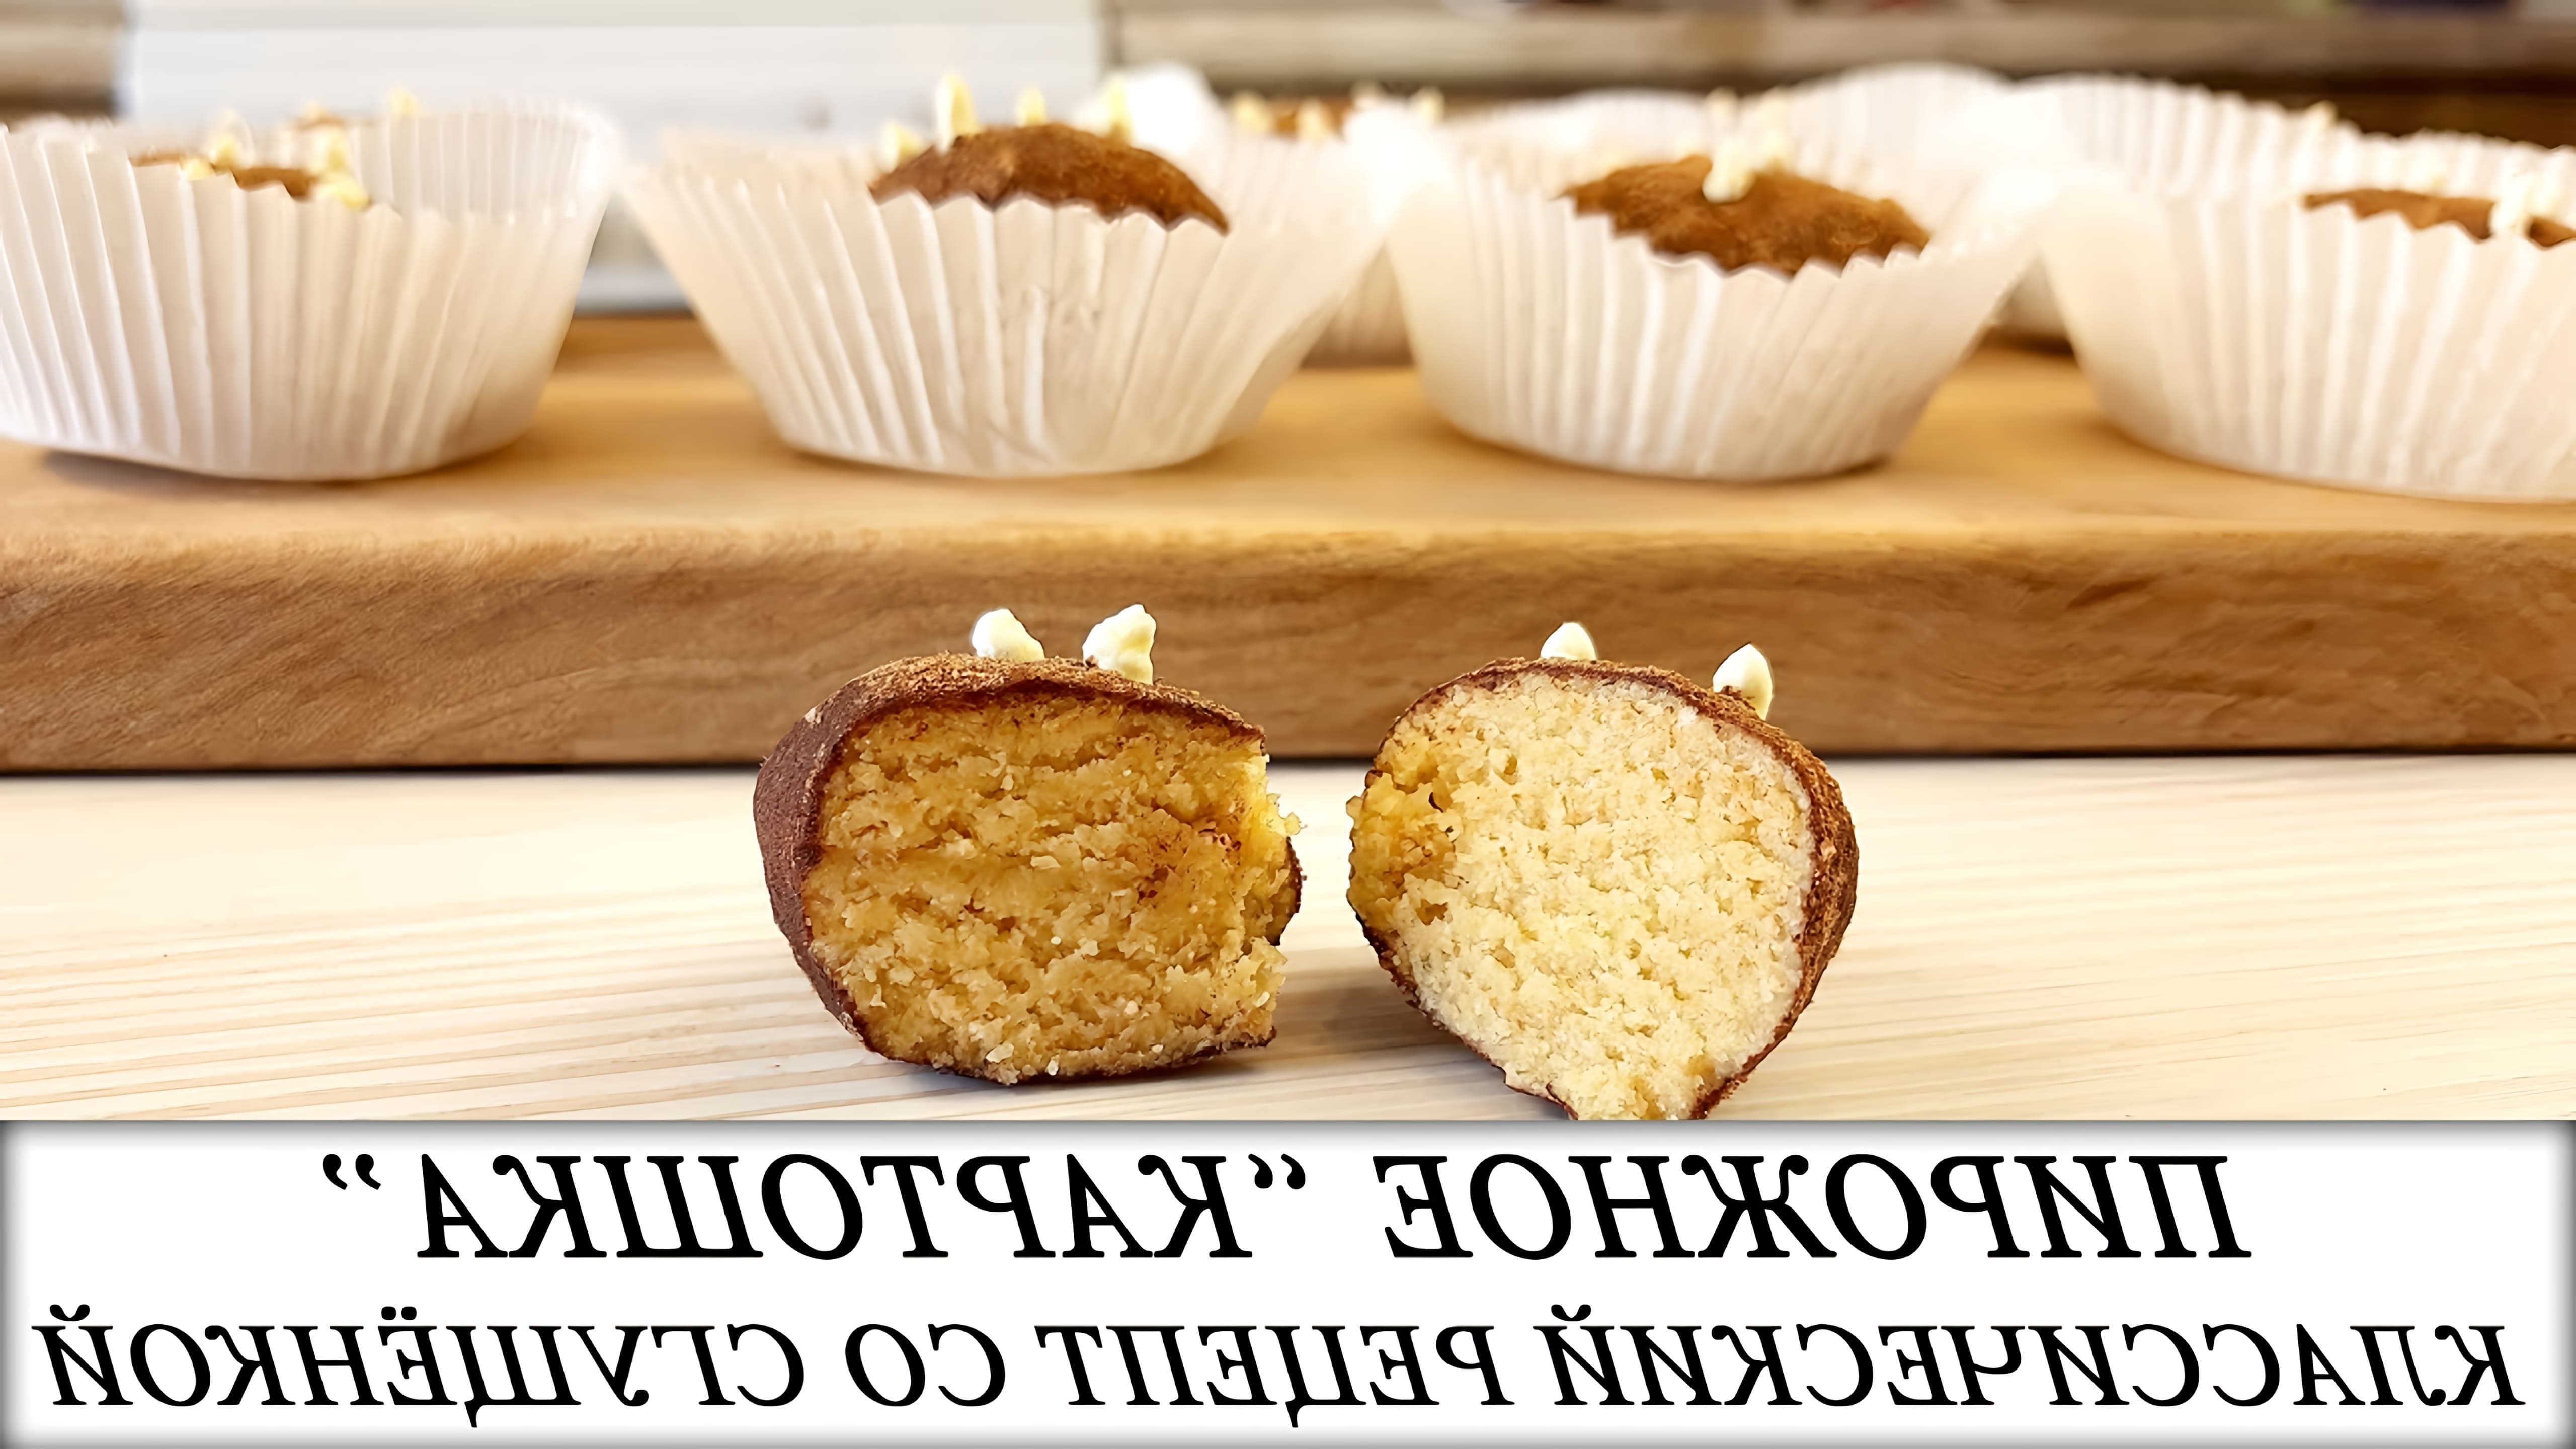 В этом видео демонстрируется рецепт приготовления классического пирожного "Картошка" из ванильного бисквита со сгущенкой